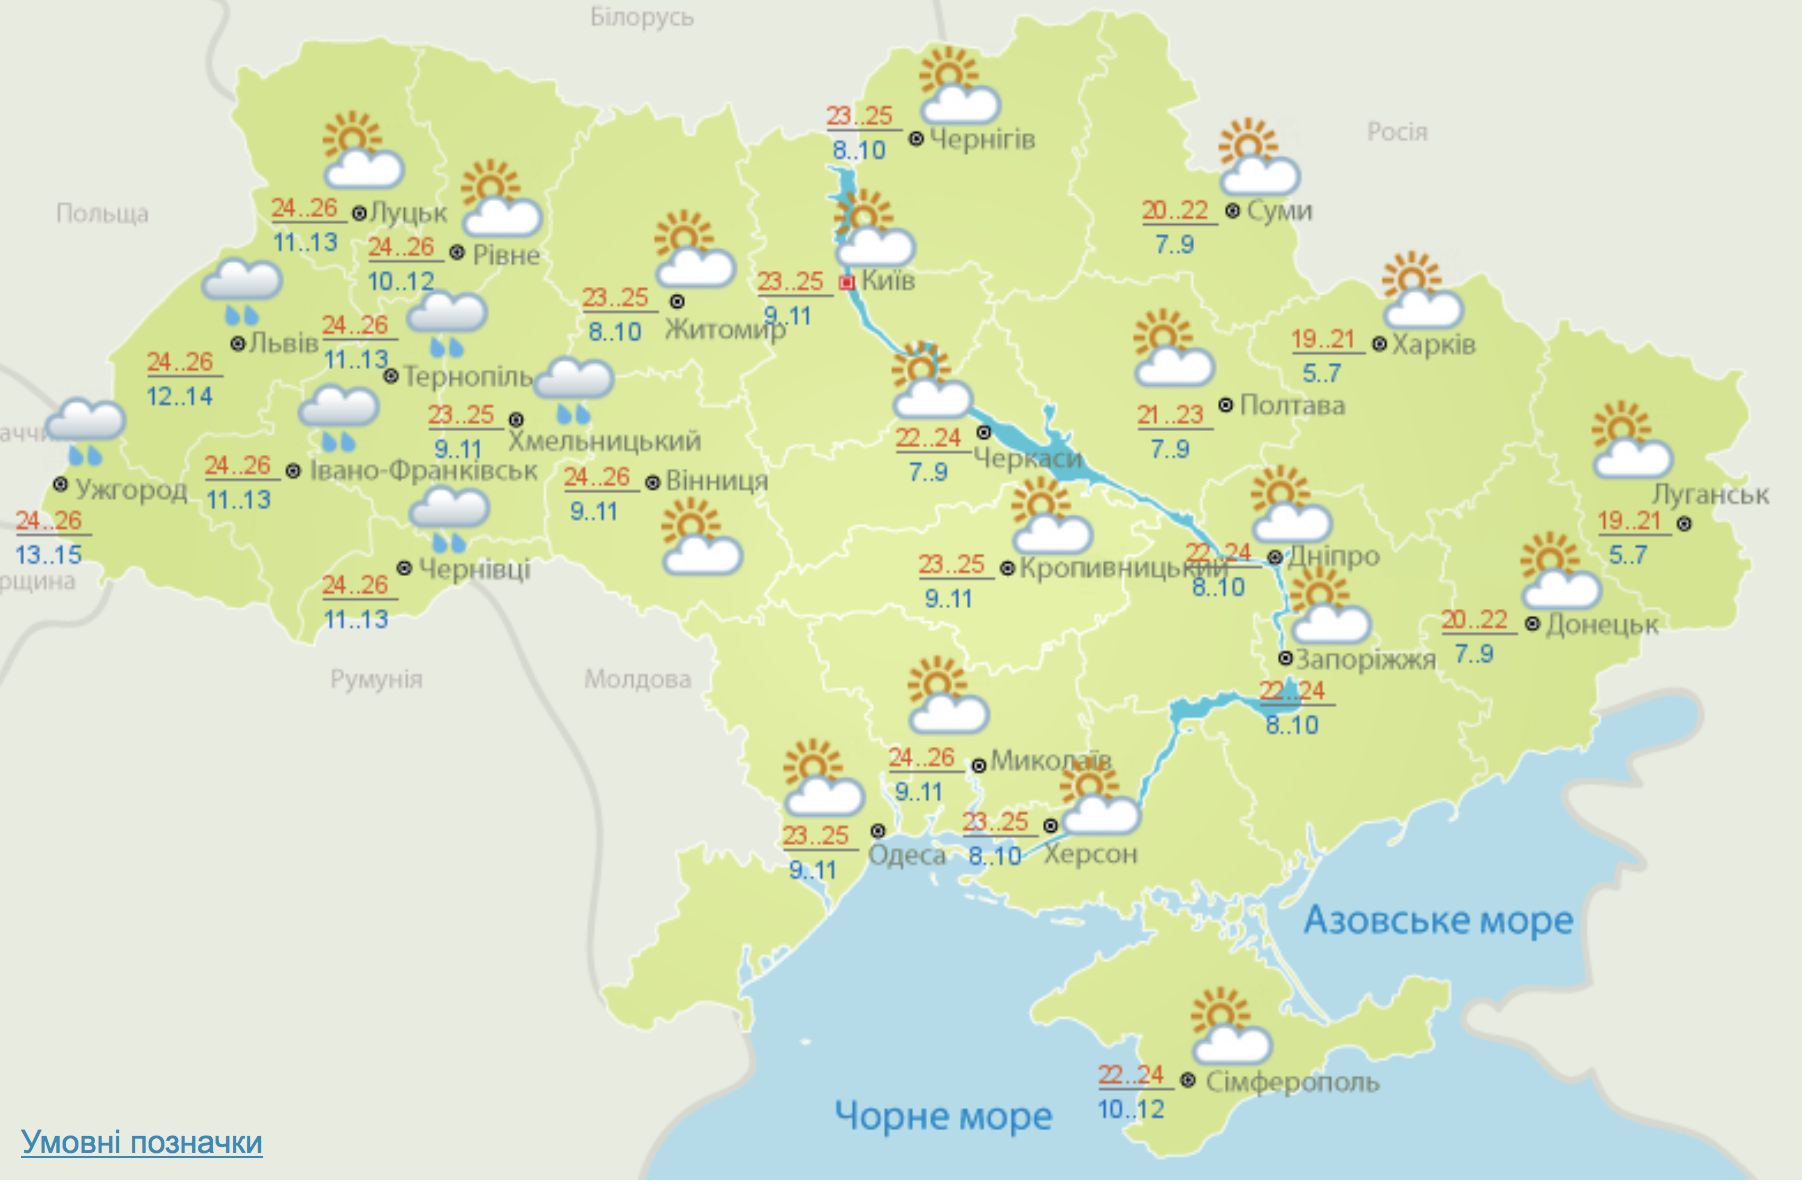 Появился прогноз погоды на неделю в Украине